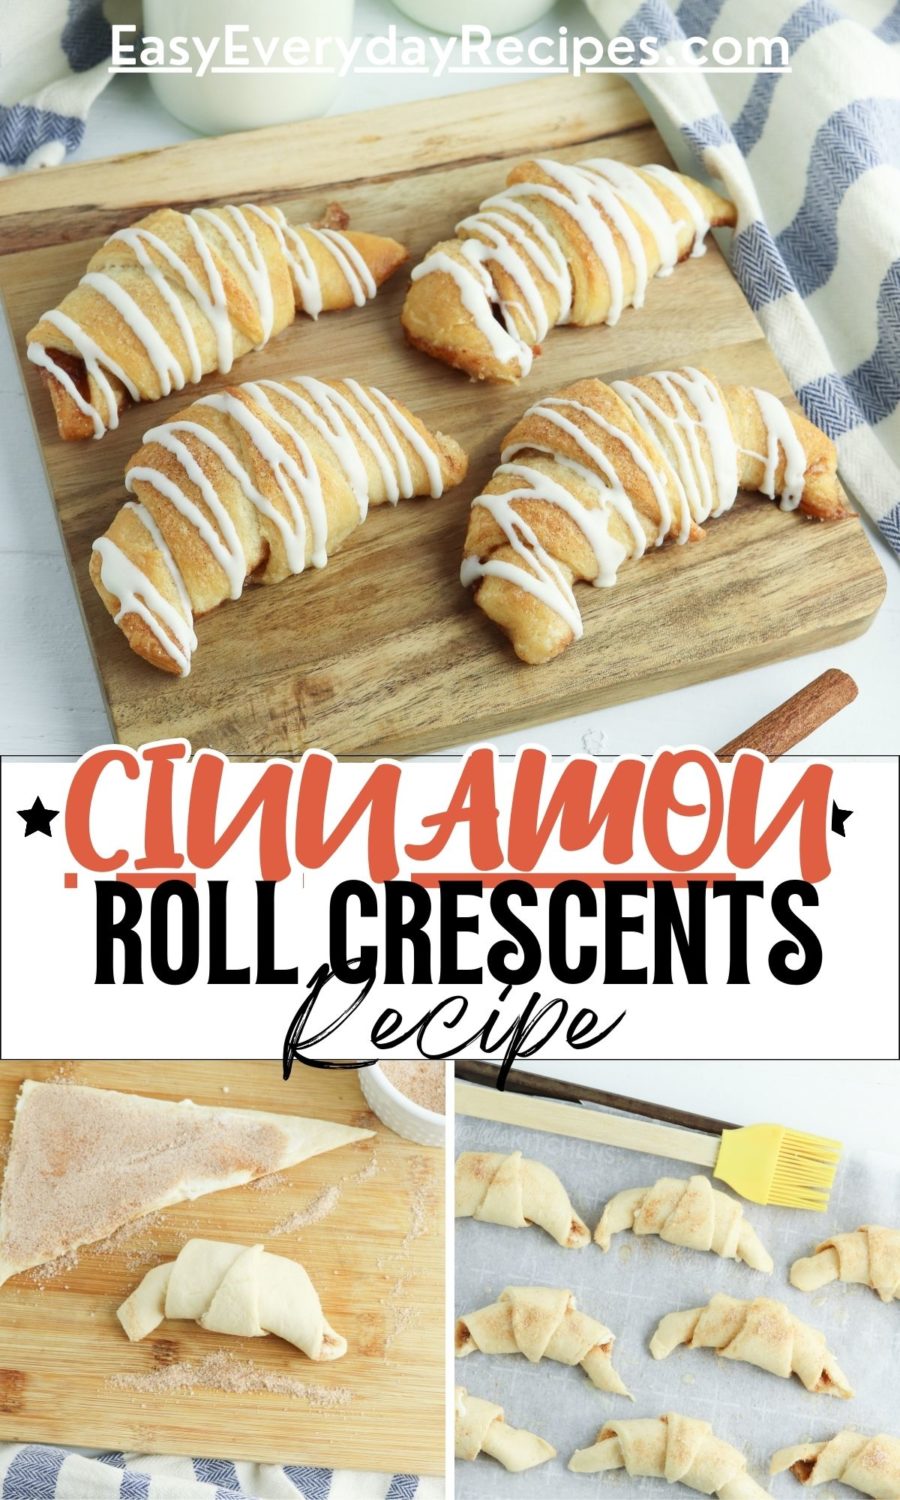 Cinnamon roll crescents recipe.